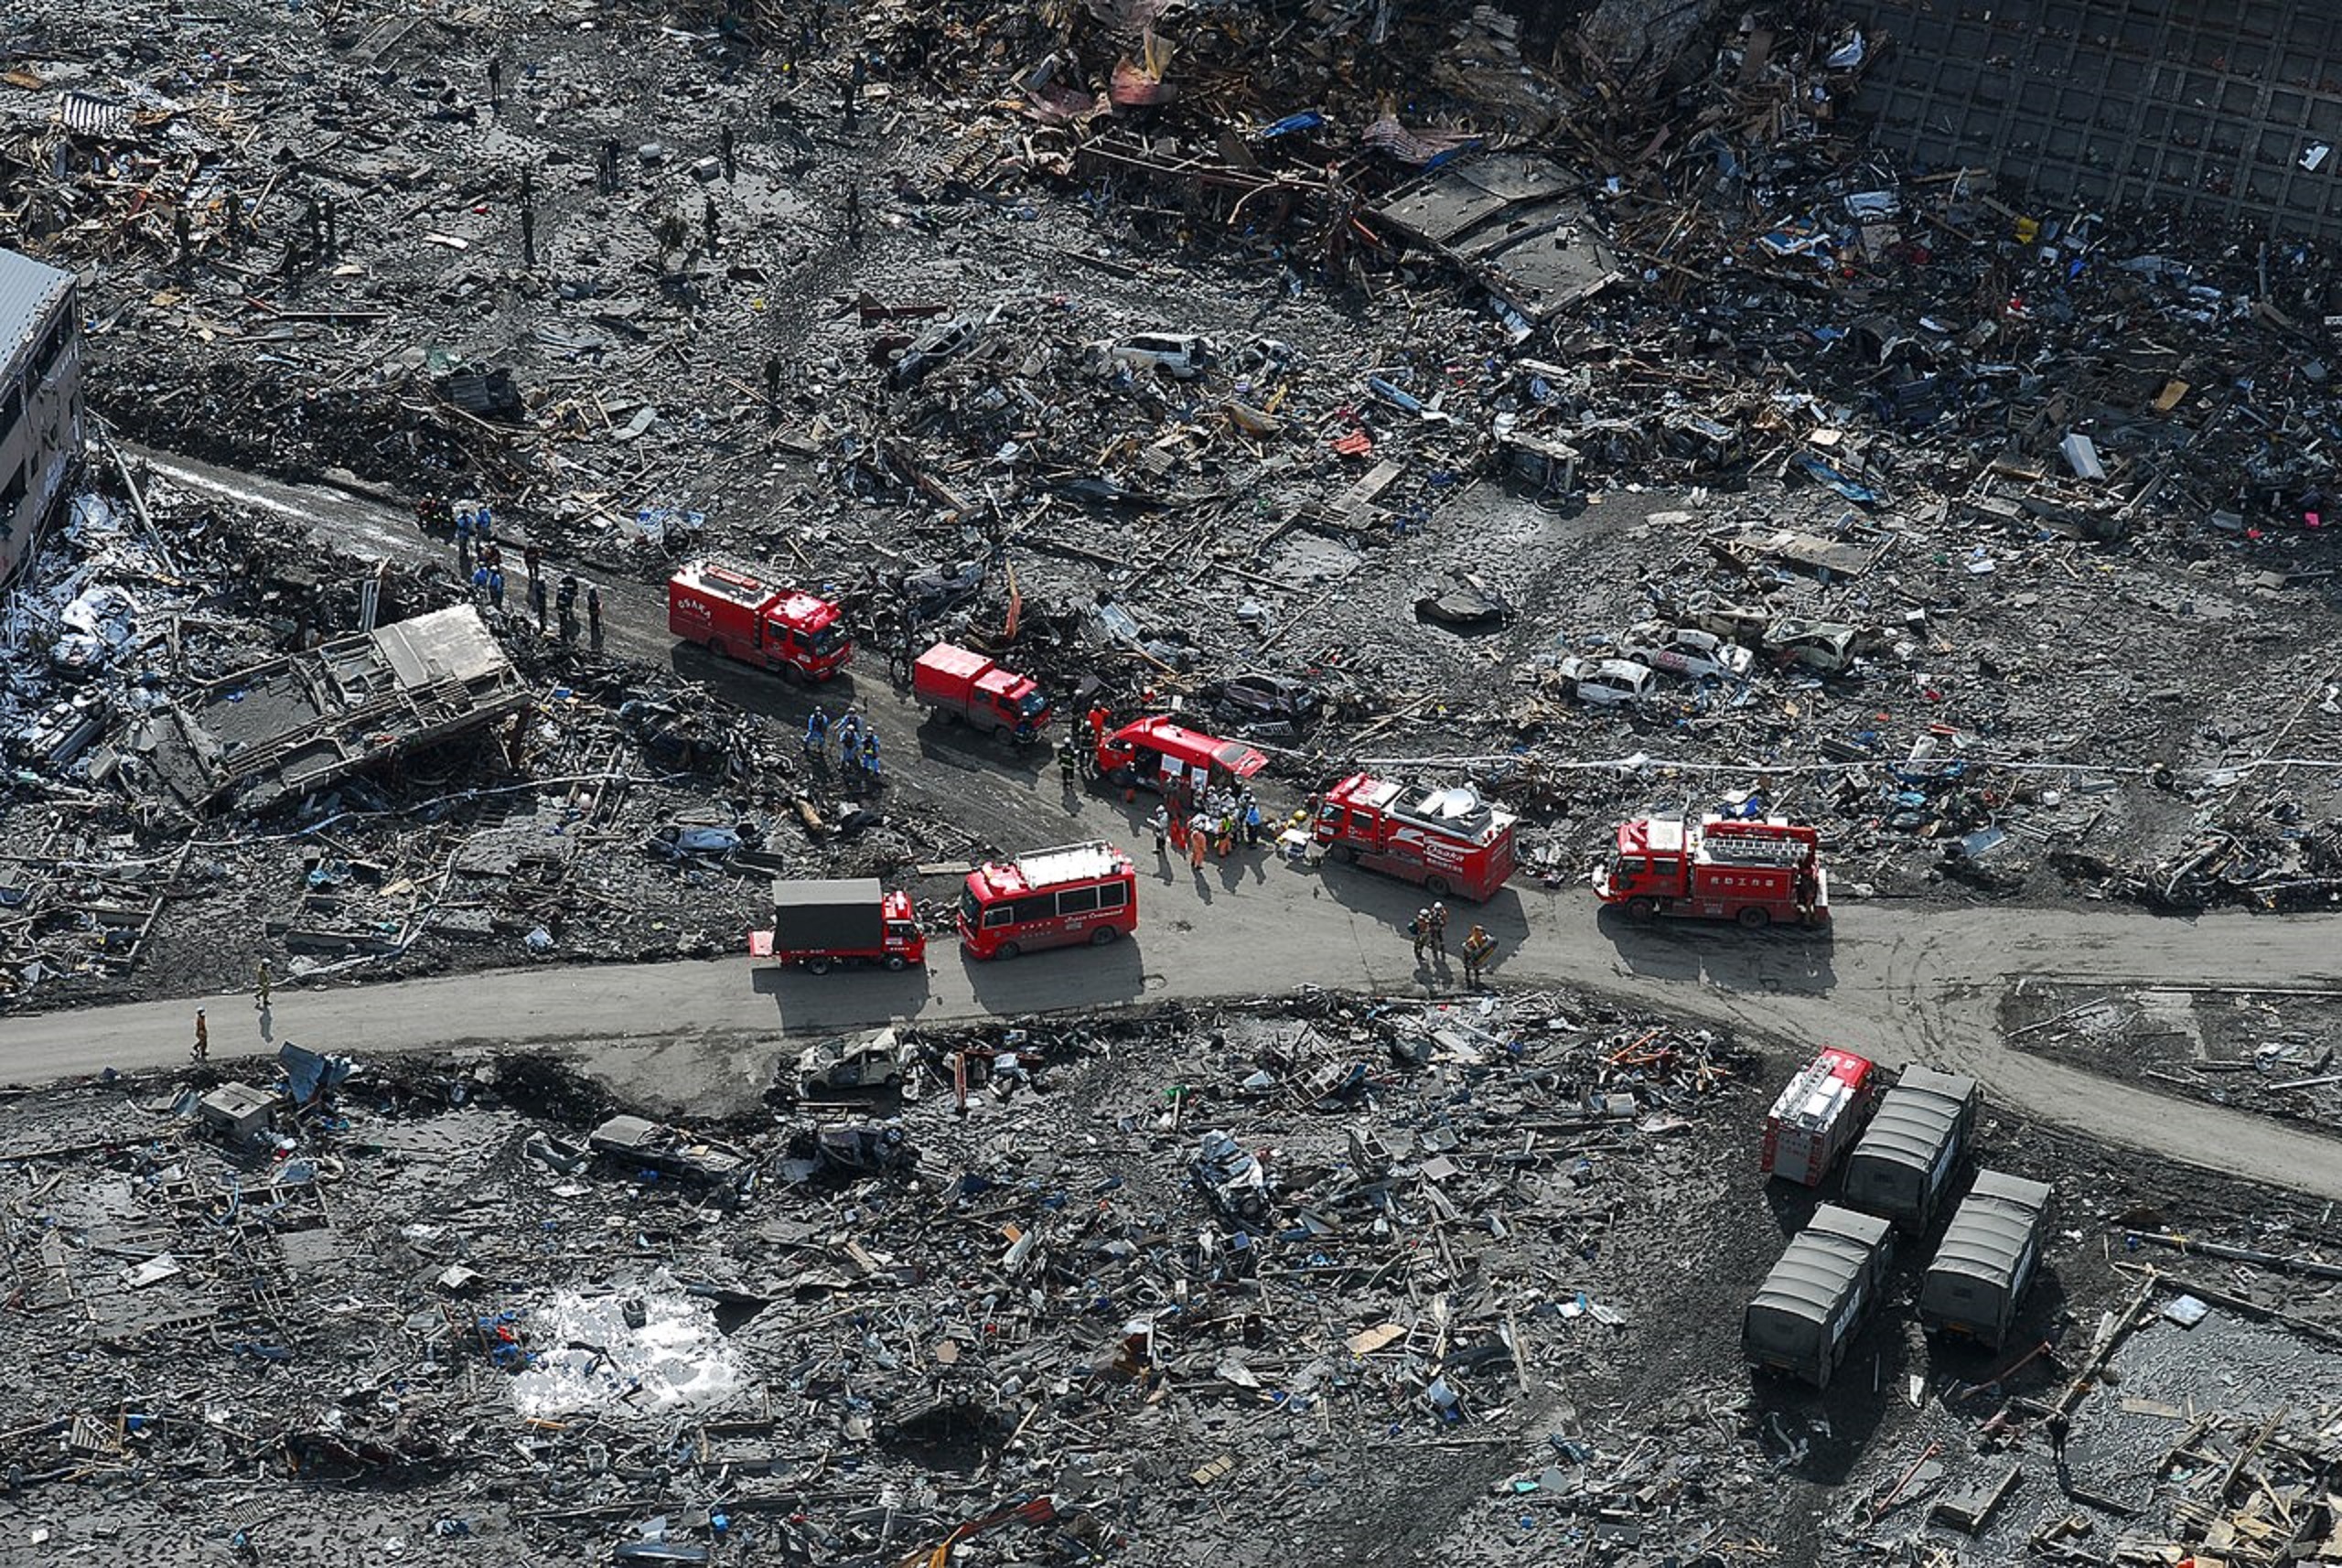 Les dégâts causés par le séisme et le tsunami de 2011 au Japon. © U.S. Navy, Mass Communication Specialist 3rd Class Dylan McCord – domaine public, Wikimedia Commons